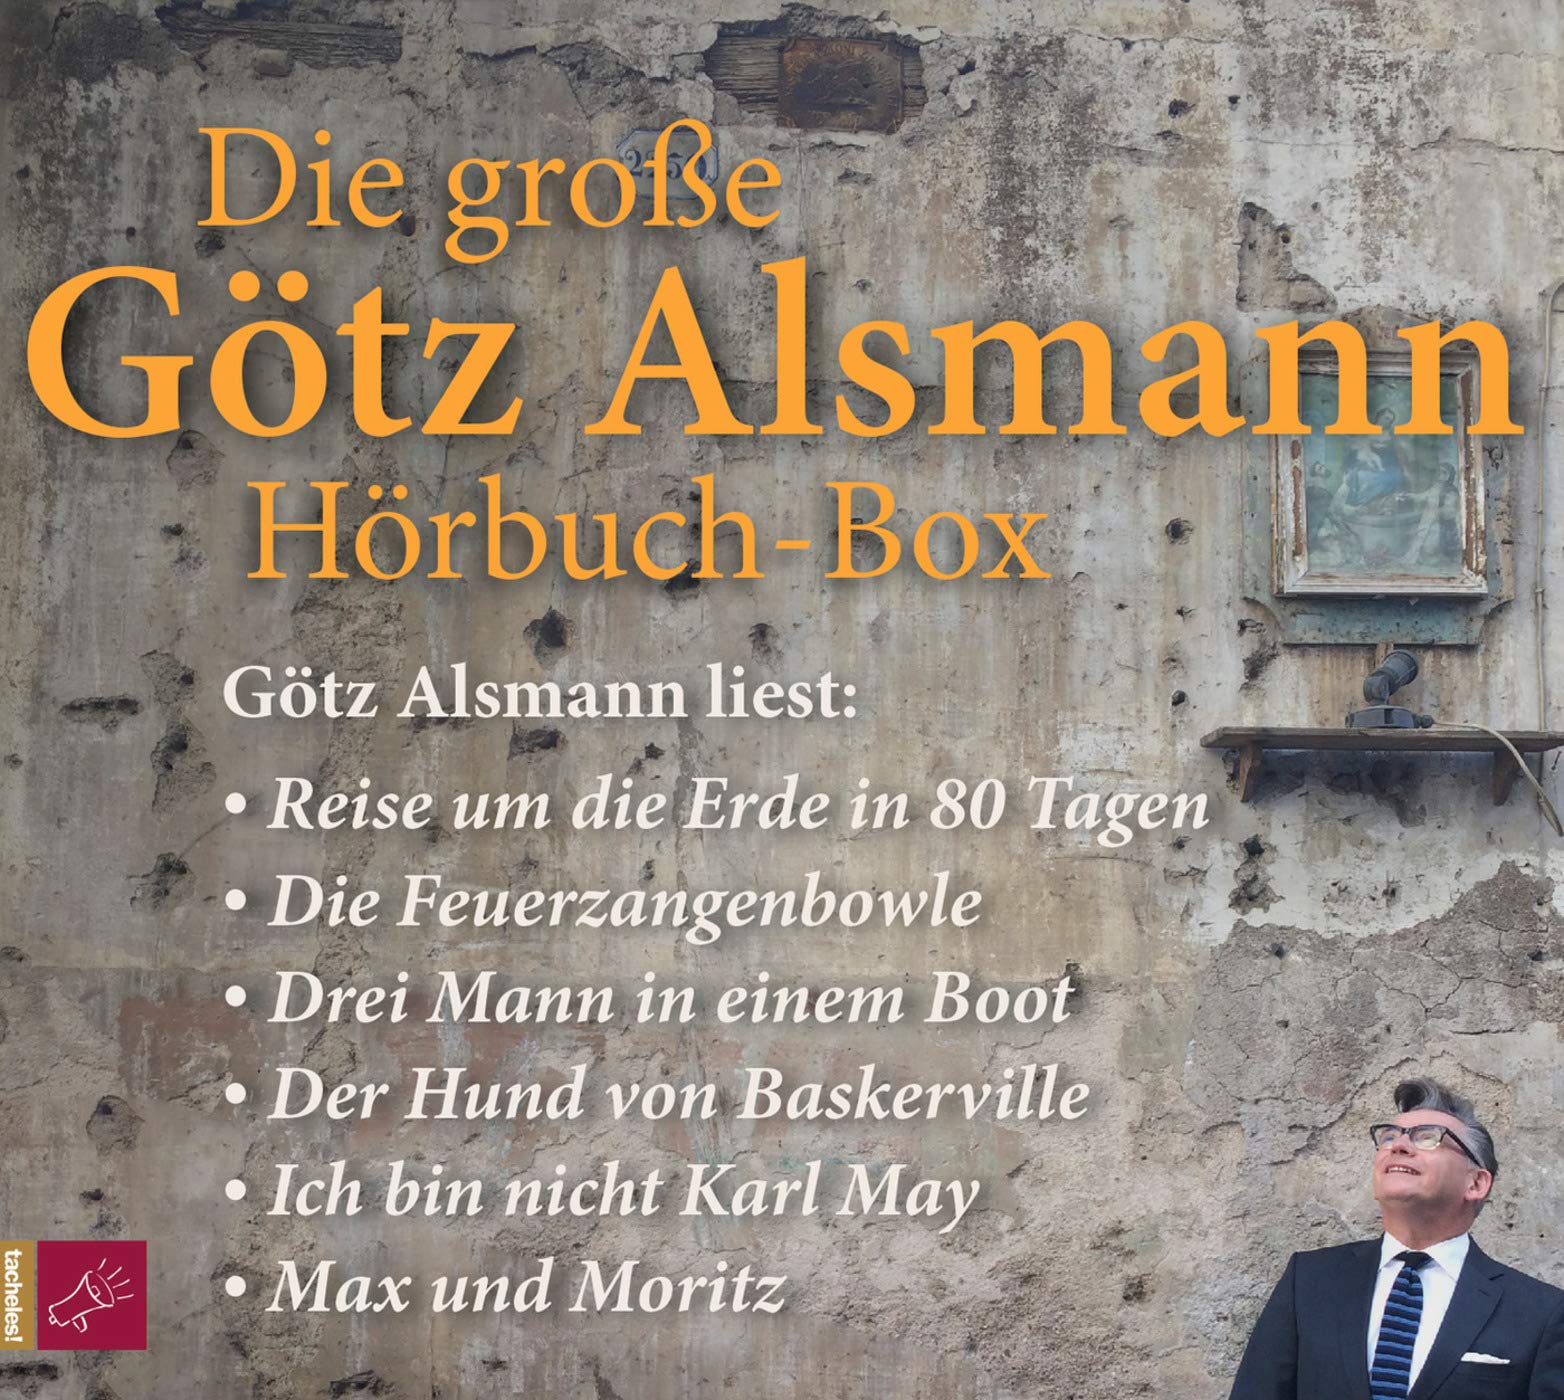 Audiolibro Grosse Gotz Alsmann Horbuch-Box (Die) (18 Cd) NUOVO SIGILLATO, EDIZIONE DEL 23/06/2017 SUBITO DISPONIBILE